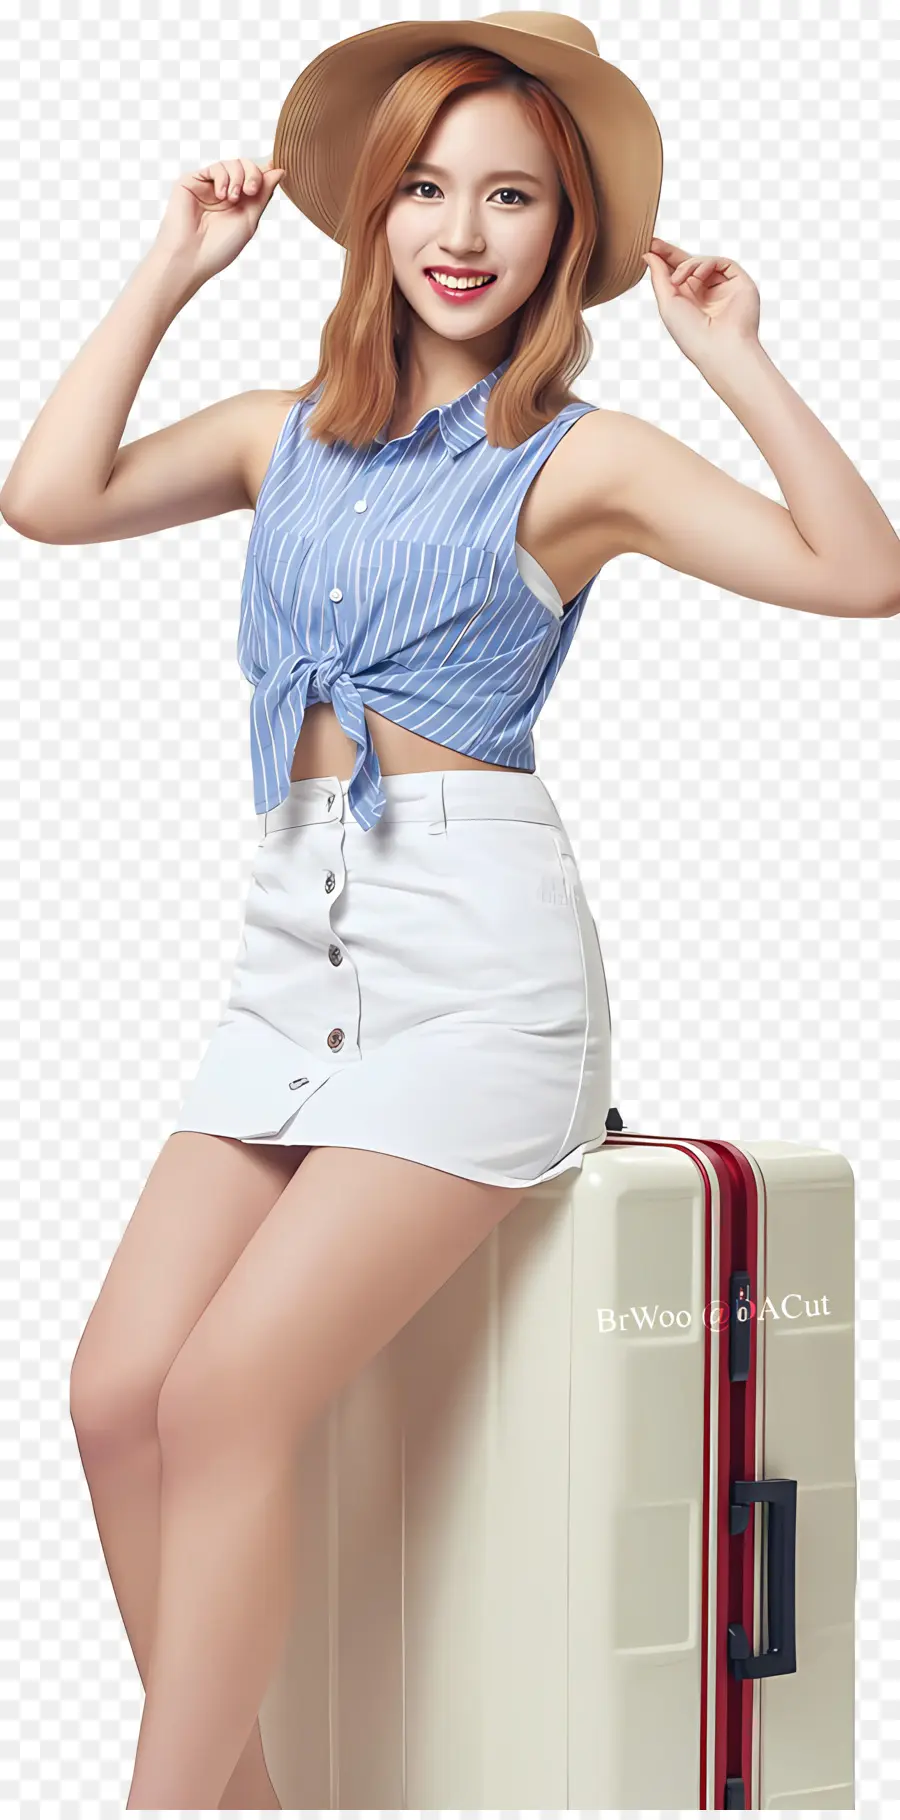 zweimal südkoreanische Mädchen Frau weiße Hemd schwarze Shorts - Frau im weißen Hut sitzt auf Koffer